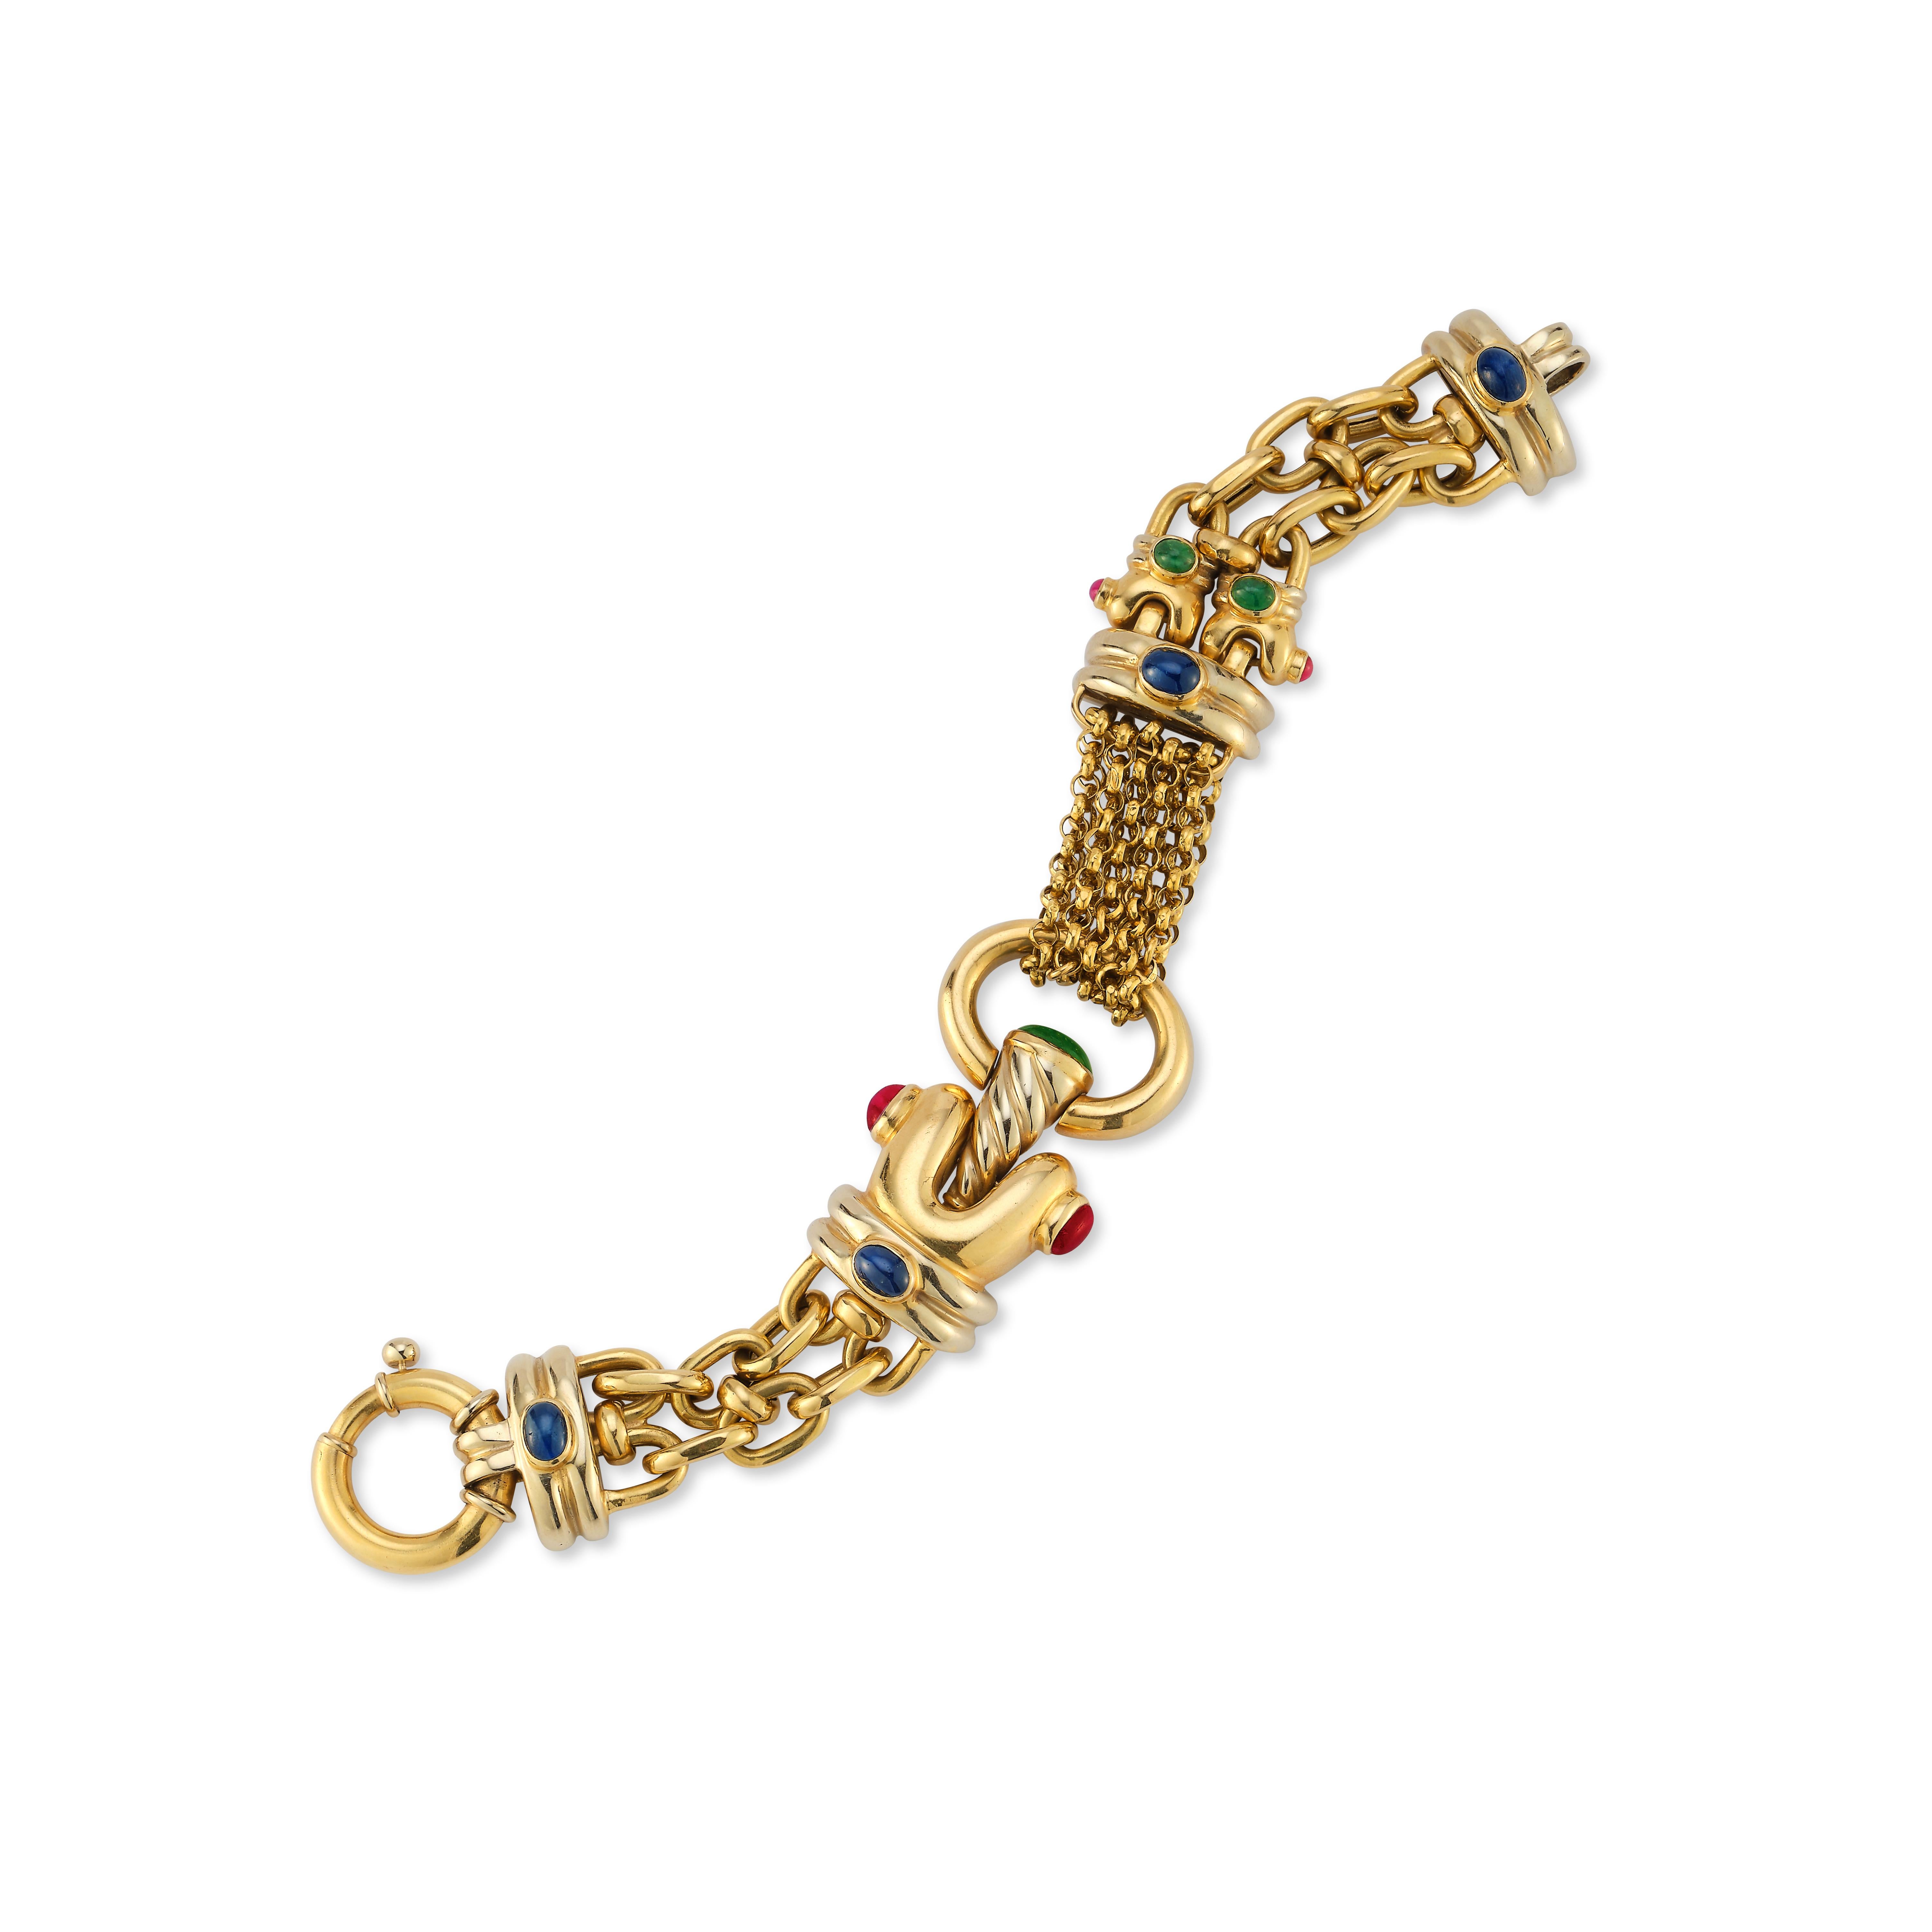 Bracelet à maillons en or et pierres multiples

Une combinaison de divers liens en or avec des saphirs cabochons, des rubis et des émeraudes sertis dans de l'or jaune 18k.

Mesures : 8.5